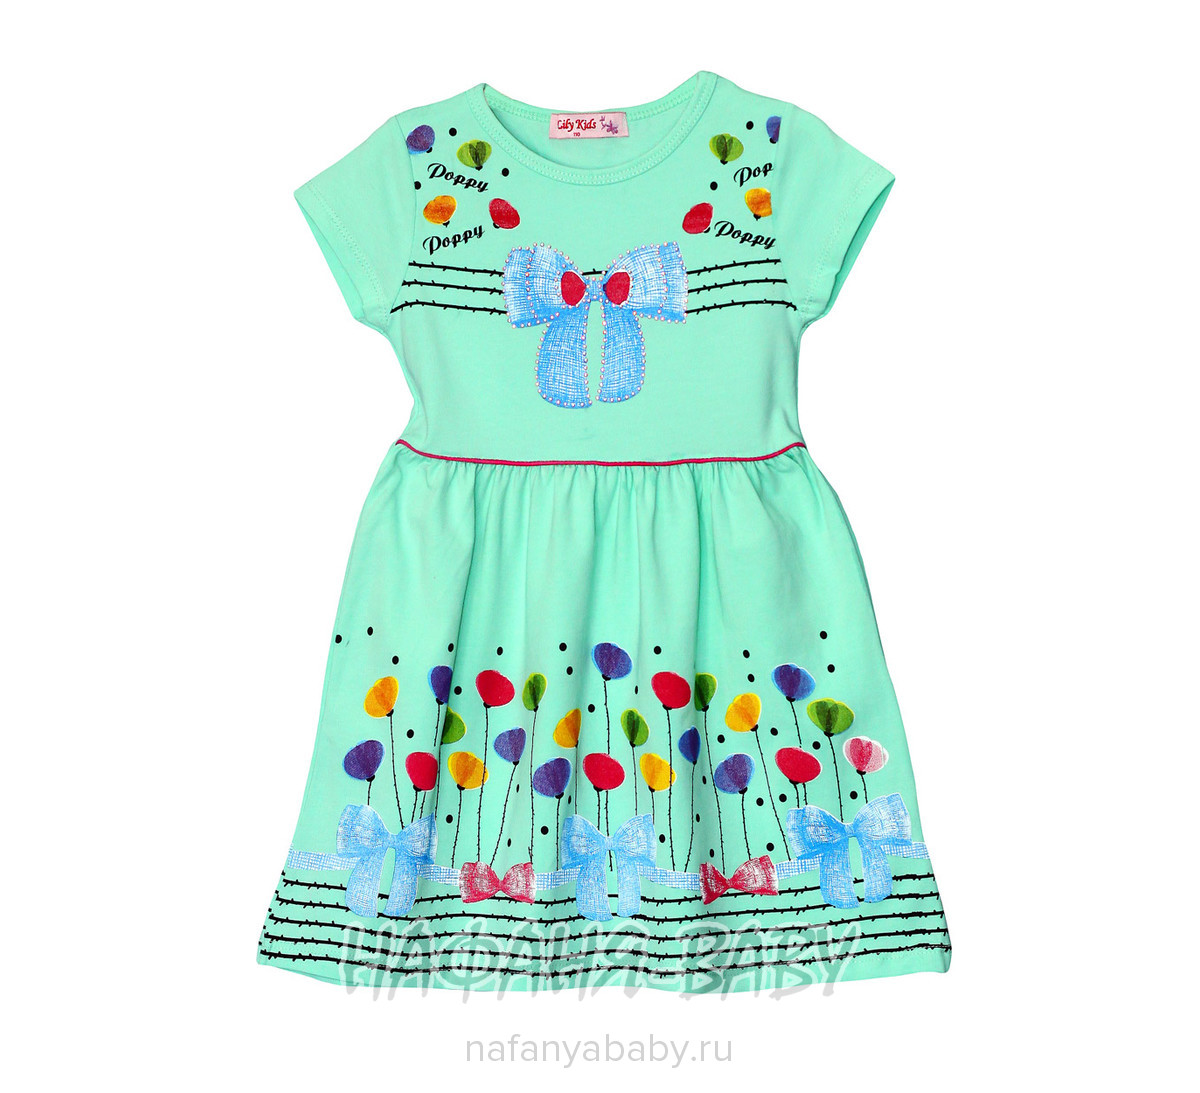 Детское платье LILY KIDS арт: 3030, 1-4 года, 5-9 лет, цвет кремовый, оптом Турция